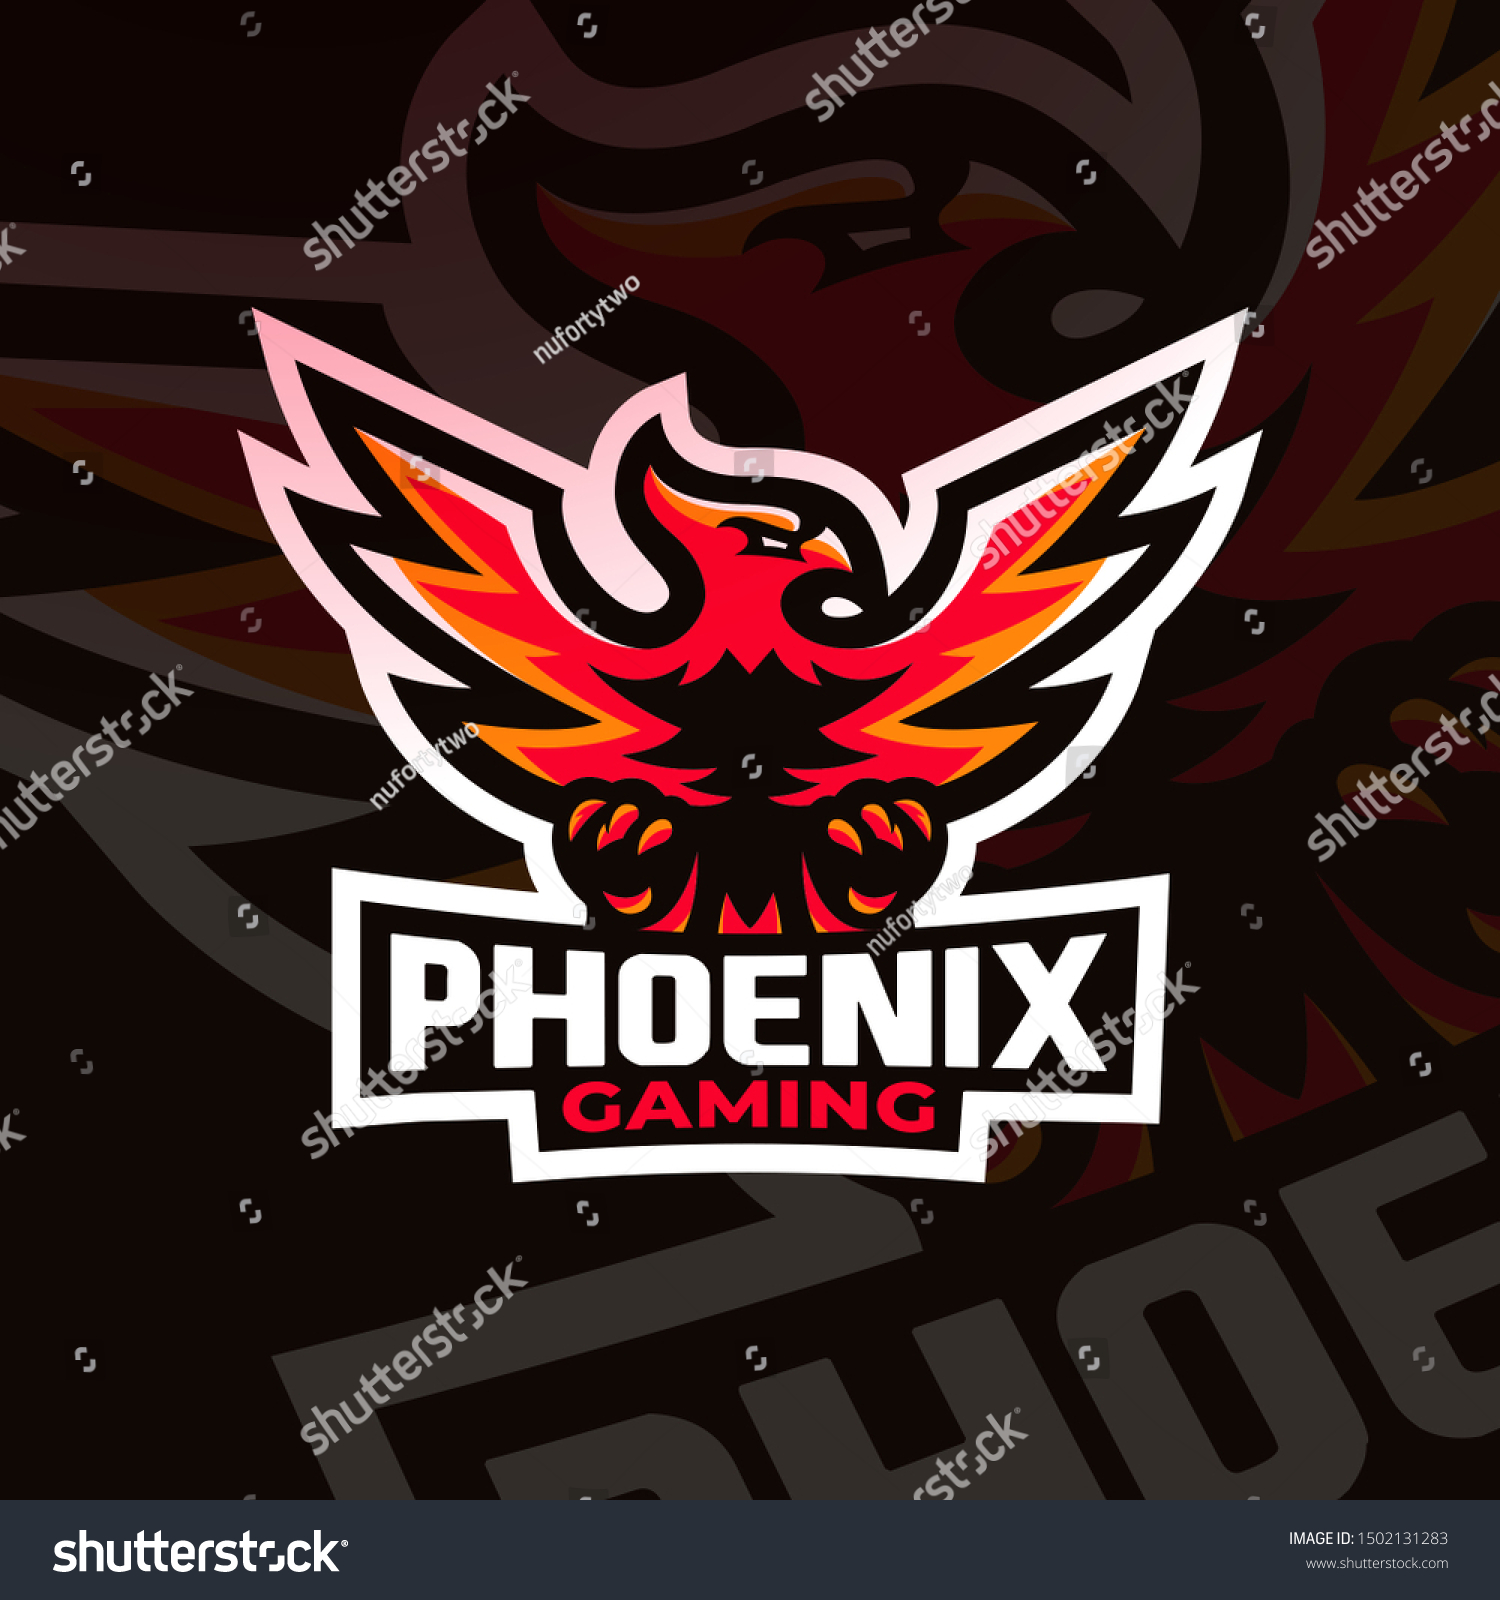 Phoenix esorts